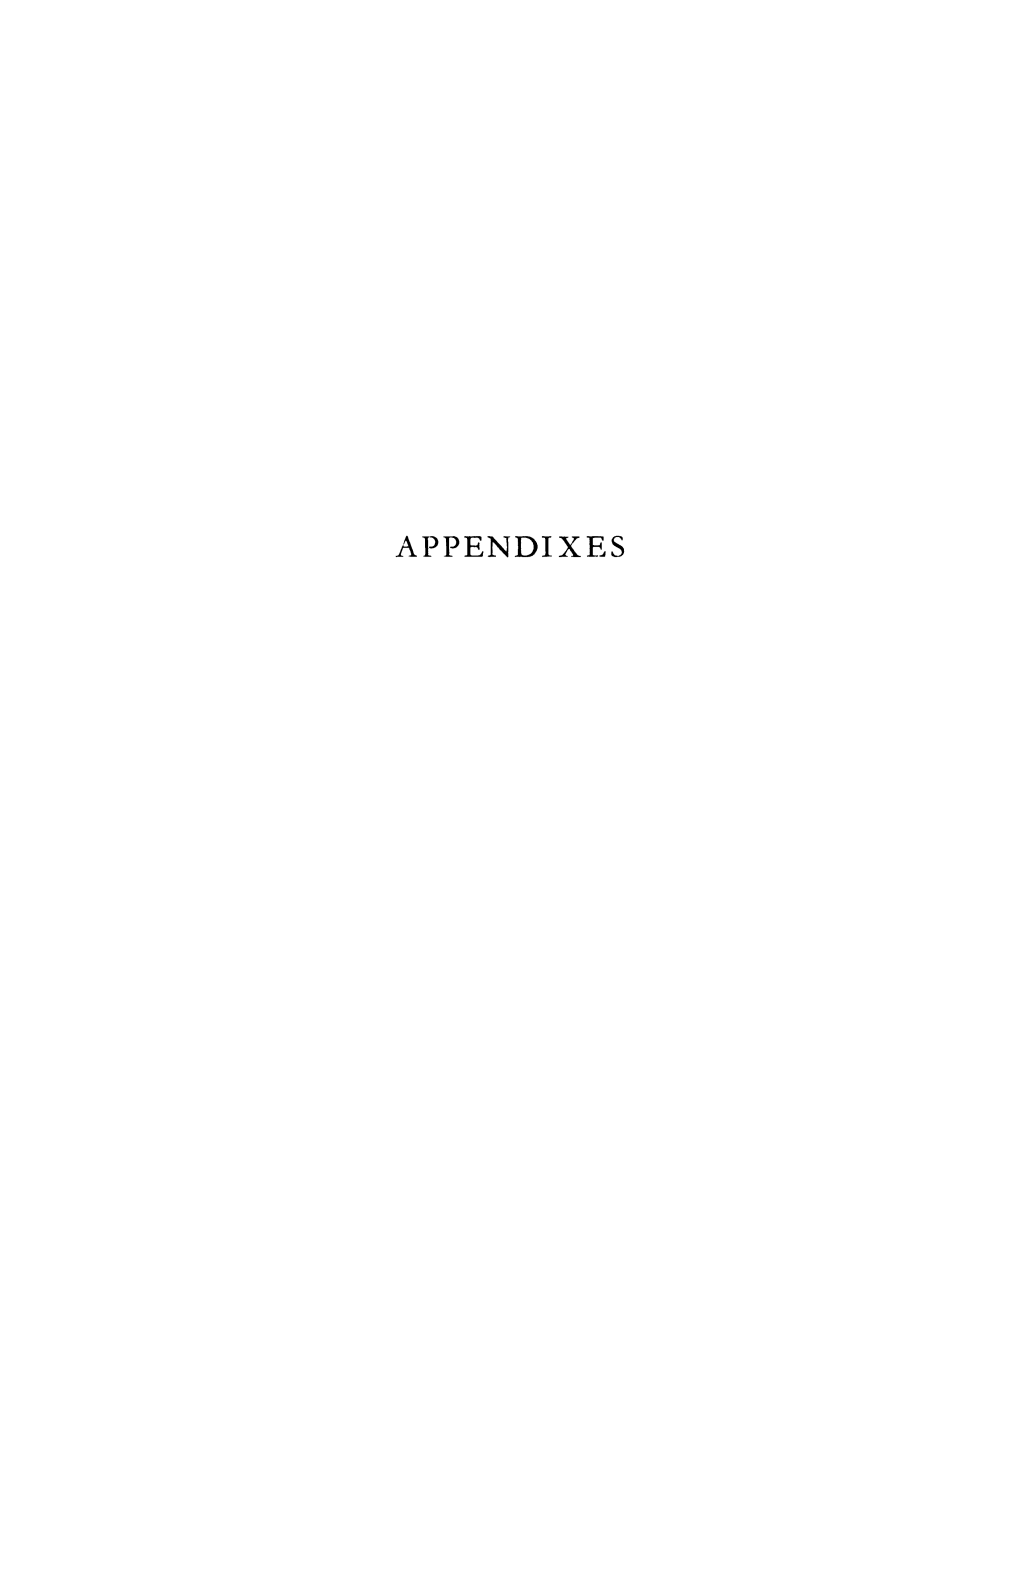 APPENDIXES Appendix I